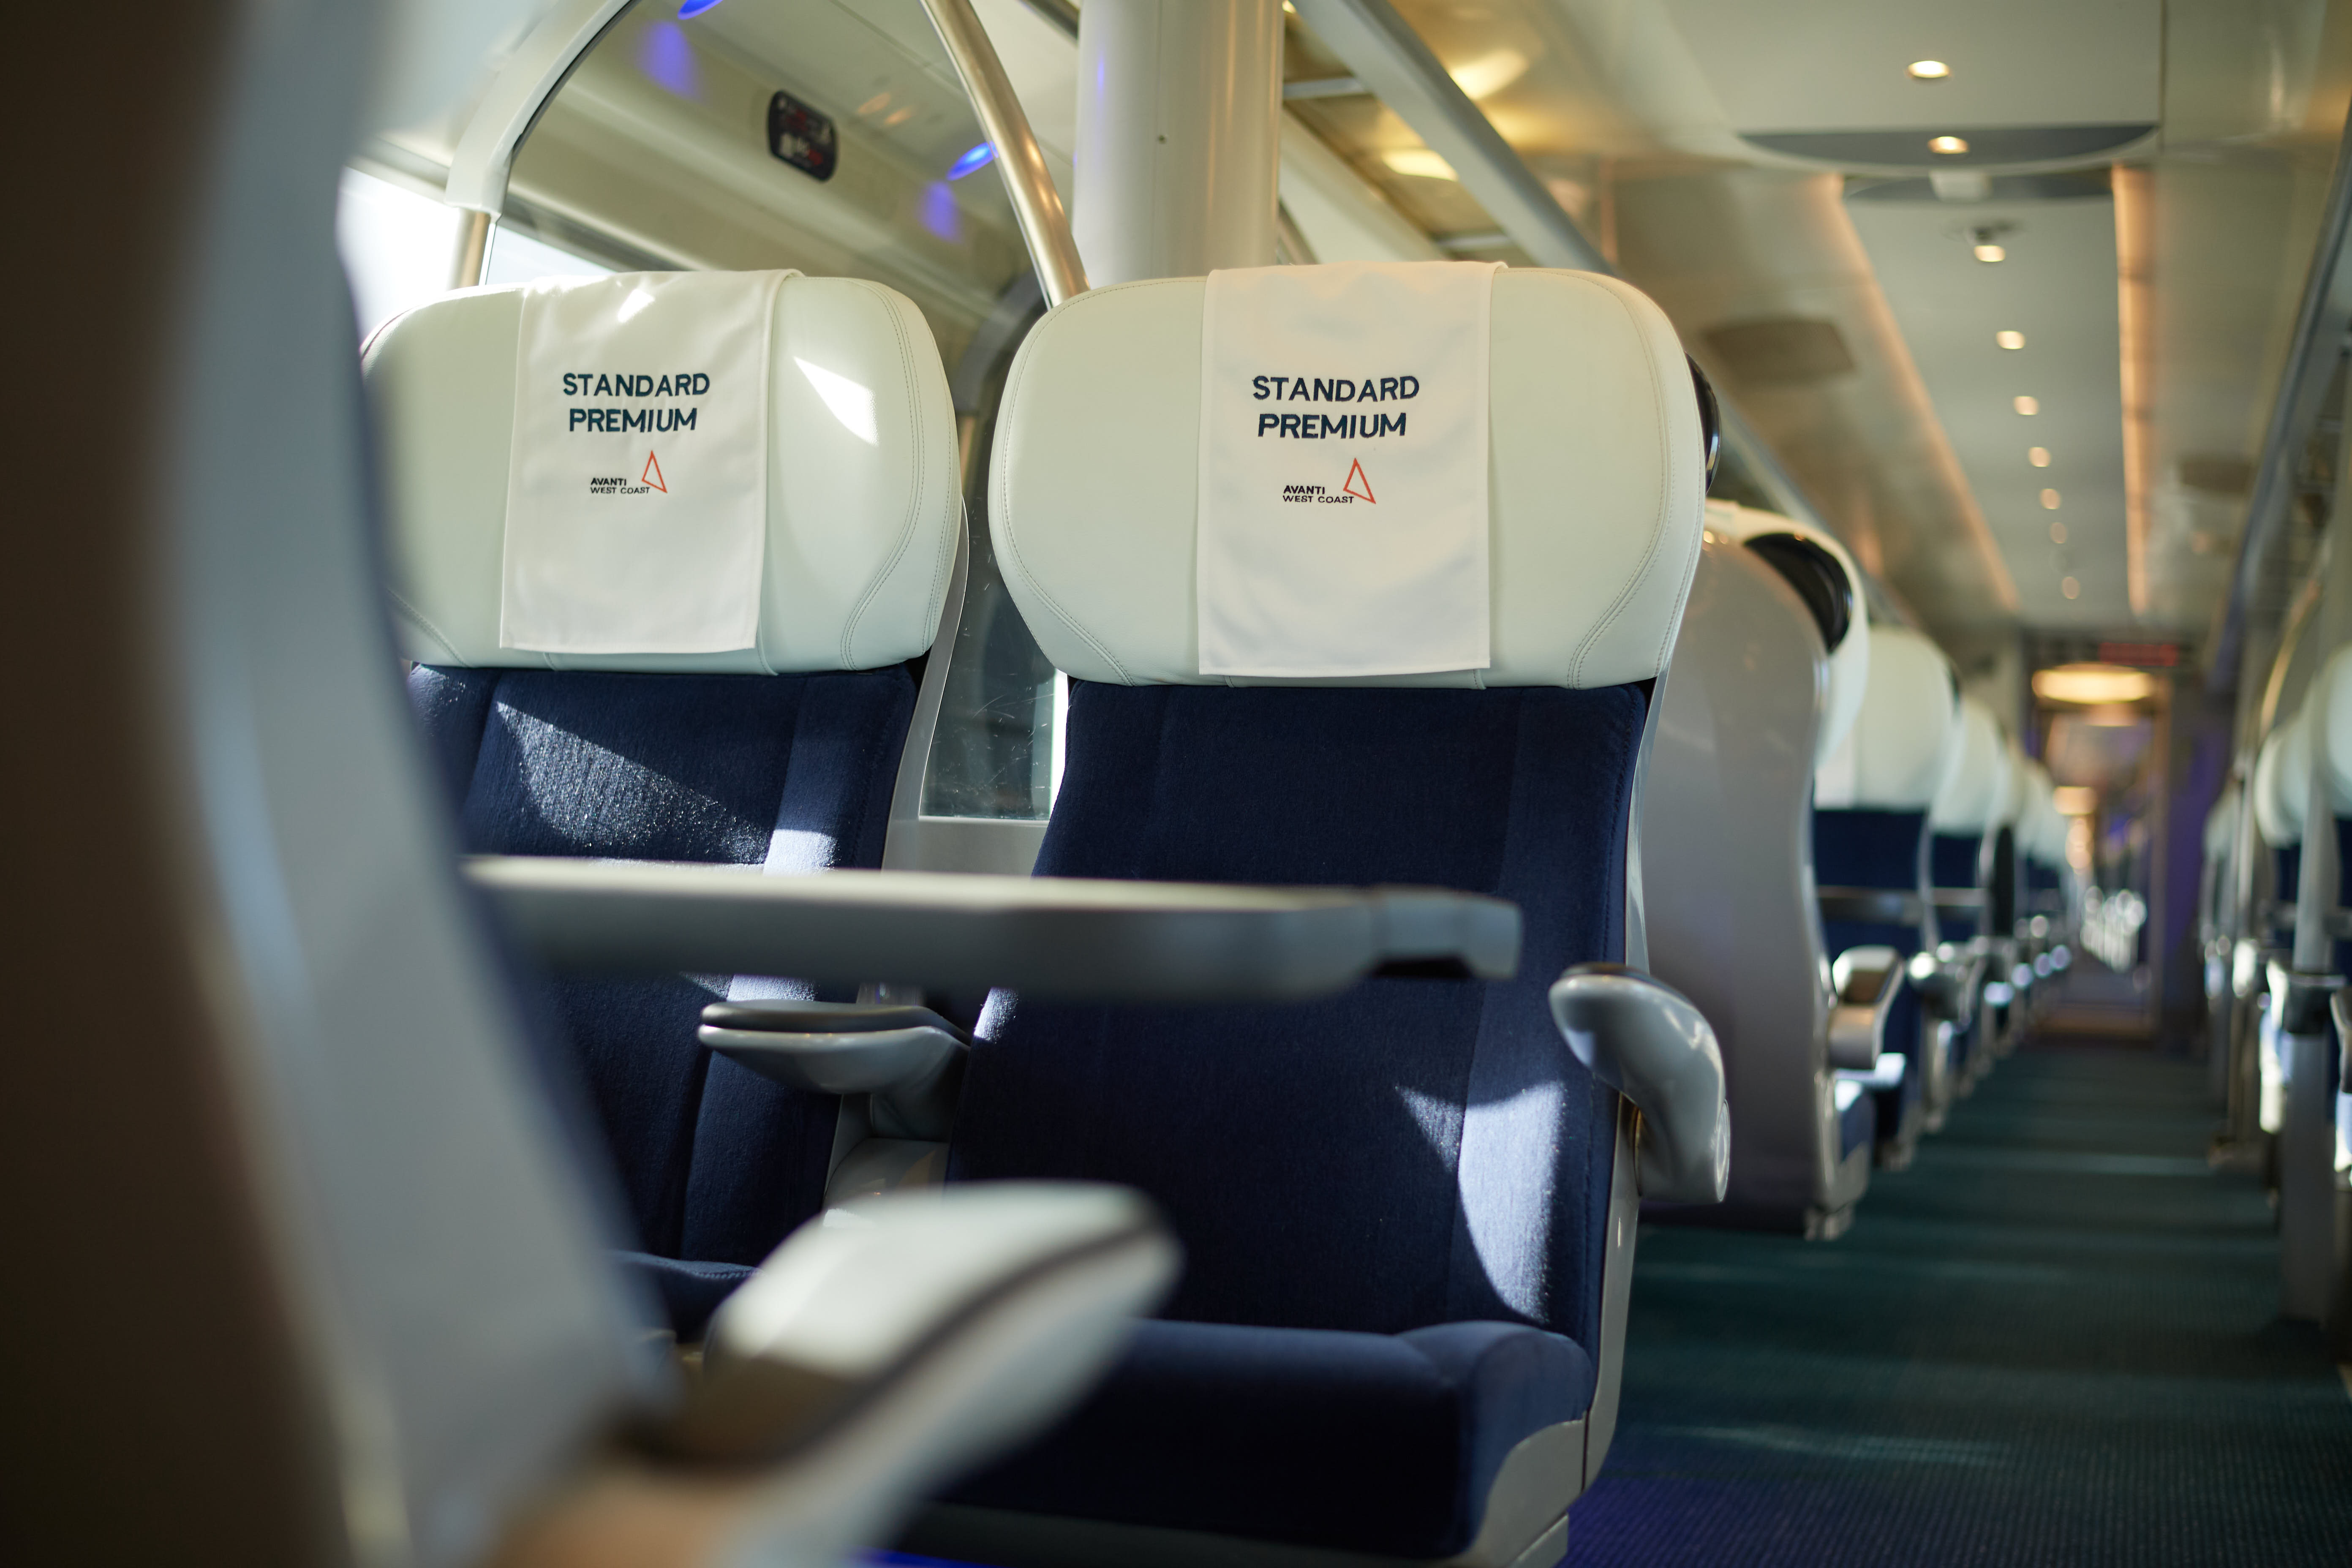 Standard premium seats on a Pendolino train